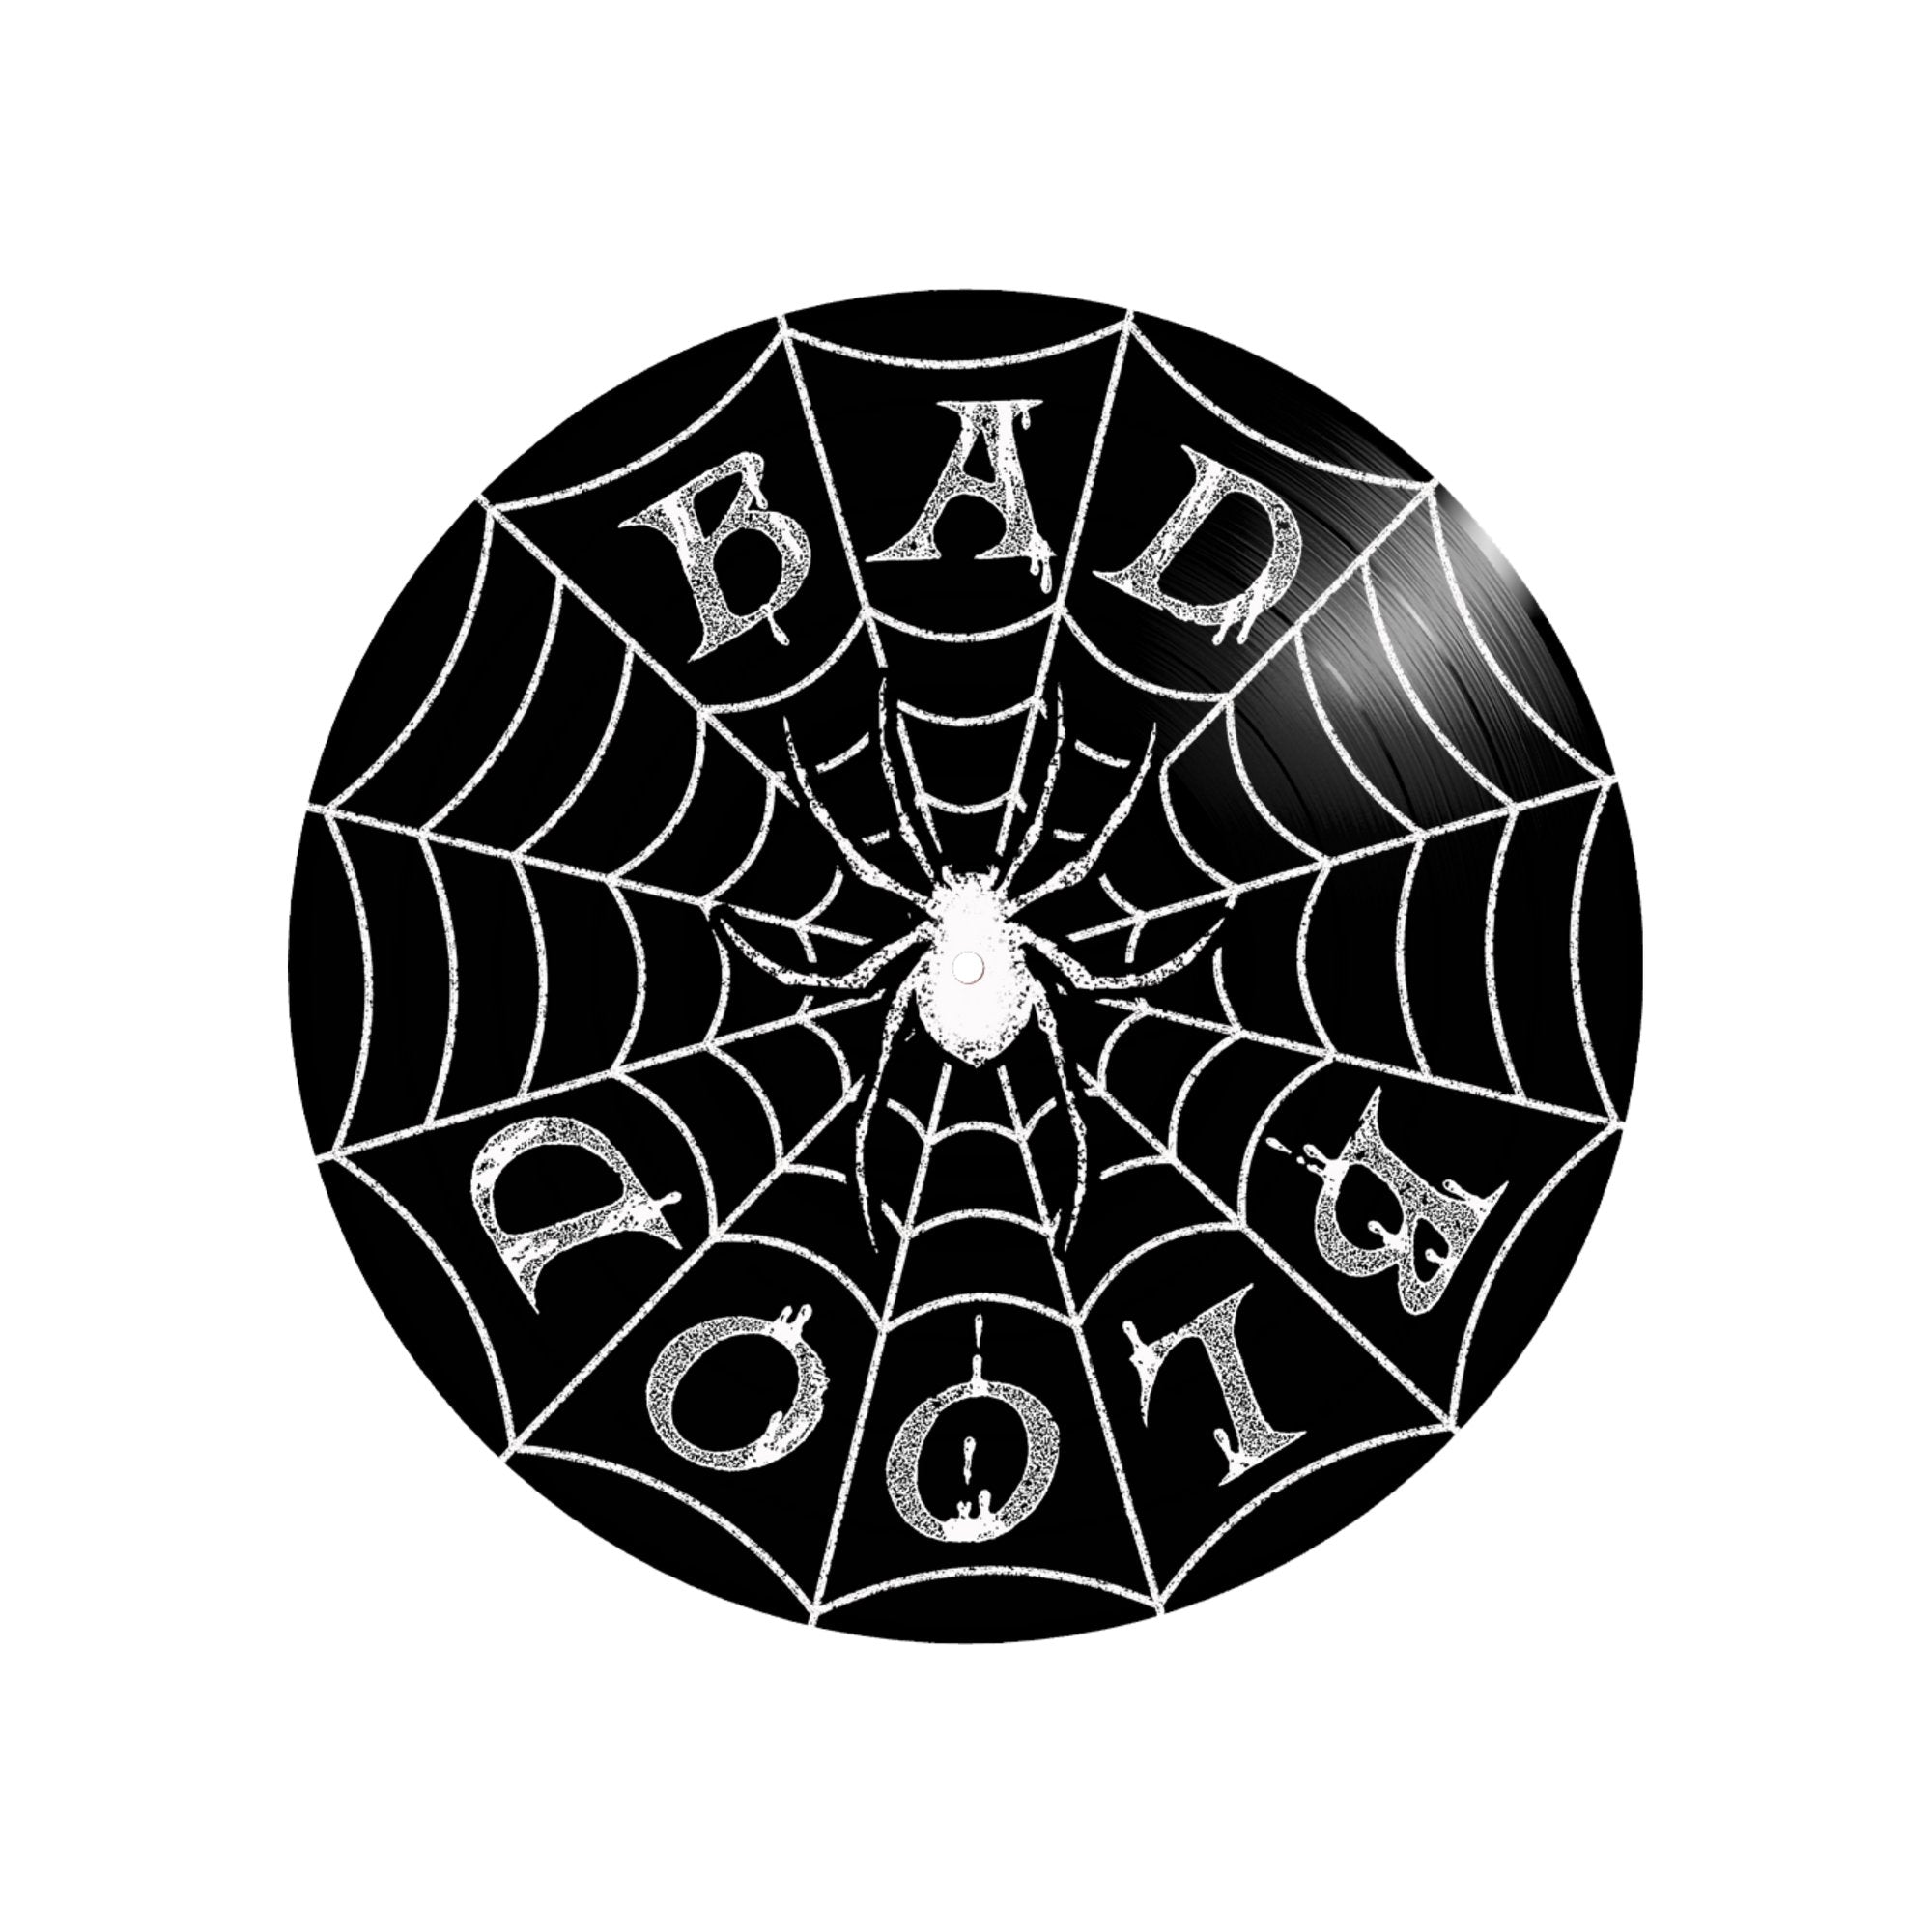 Bad Blood: The Bad Kind Decides: Black Vinyl - Steadfast Records